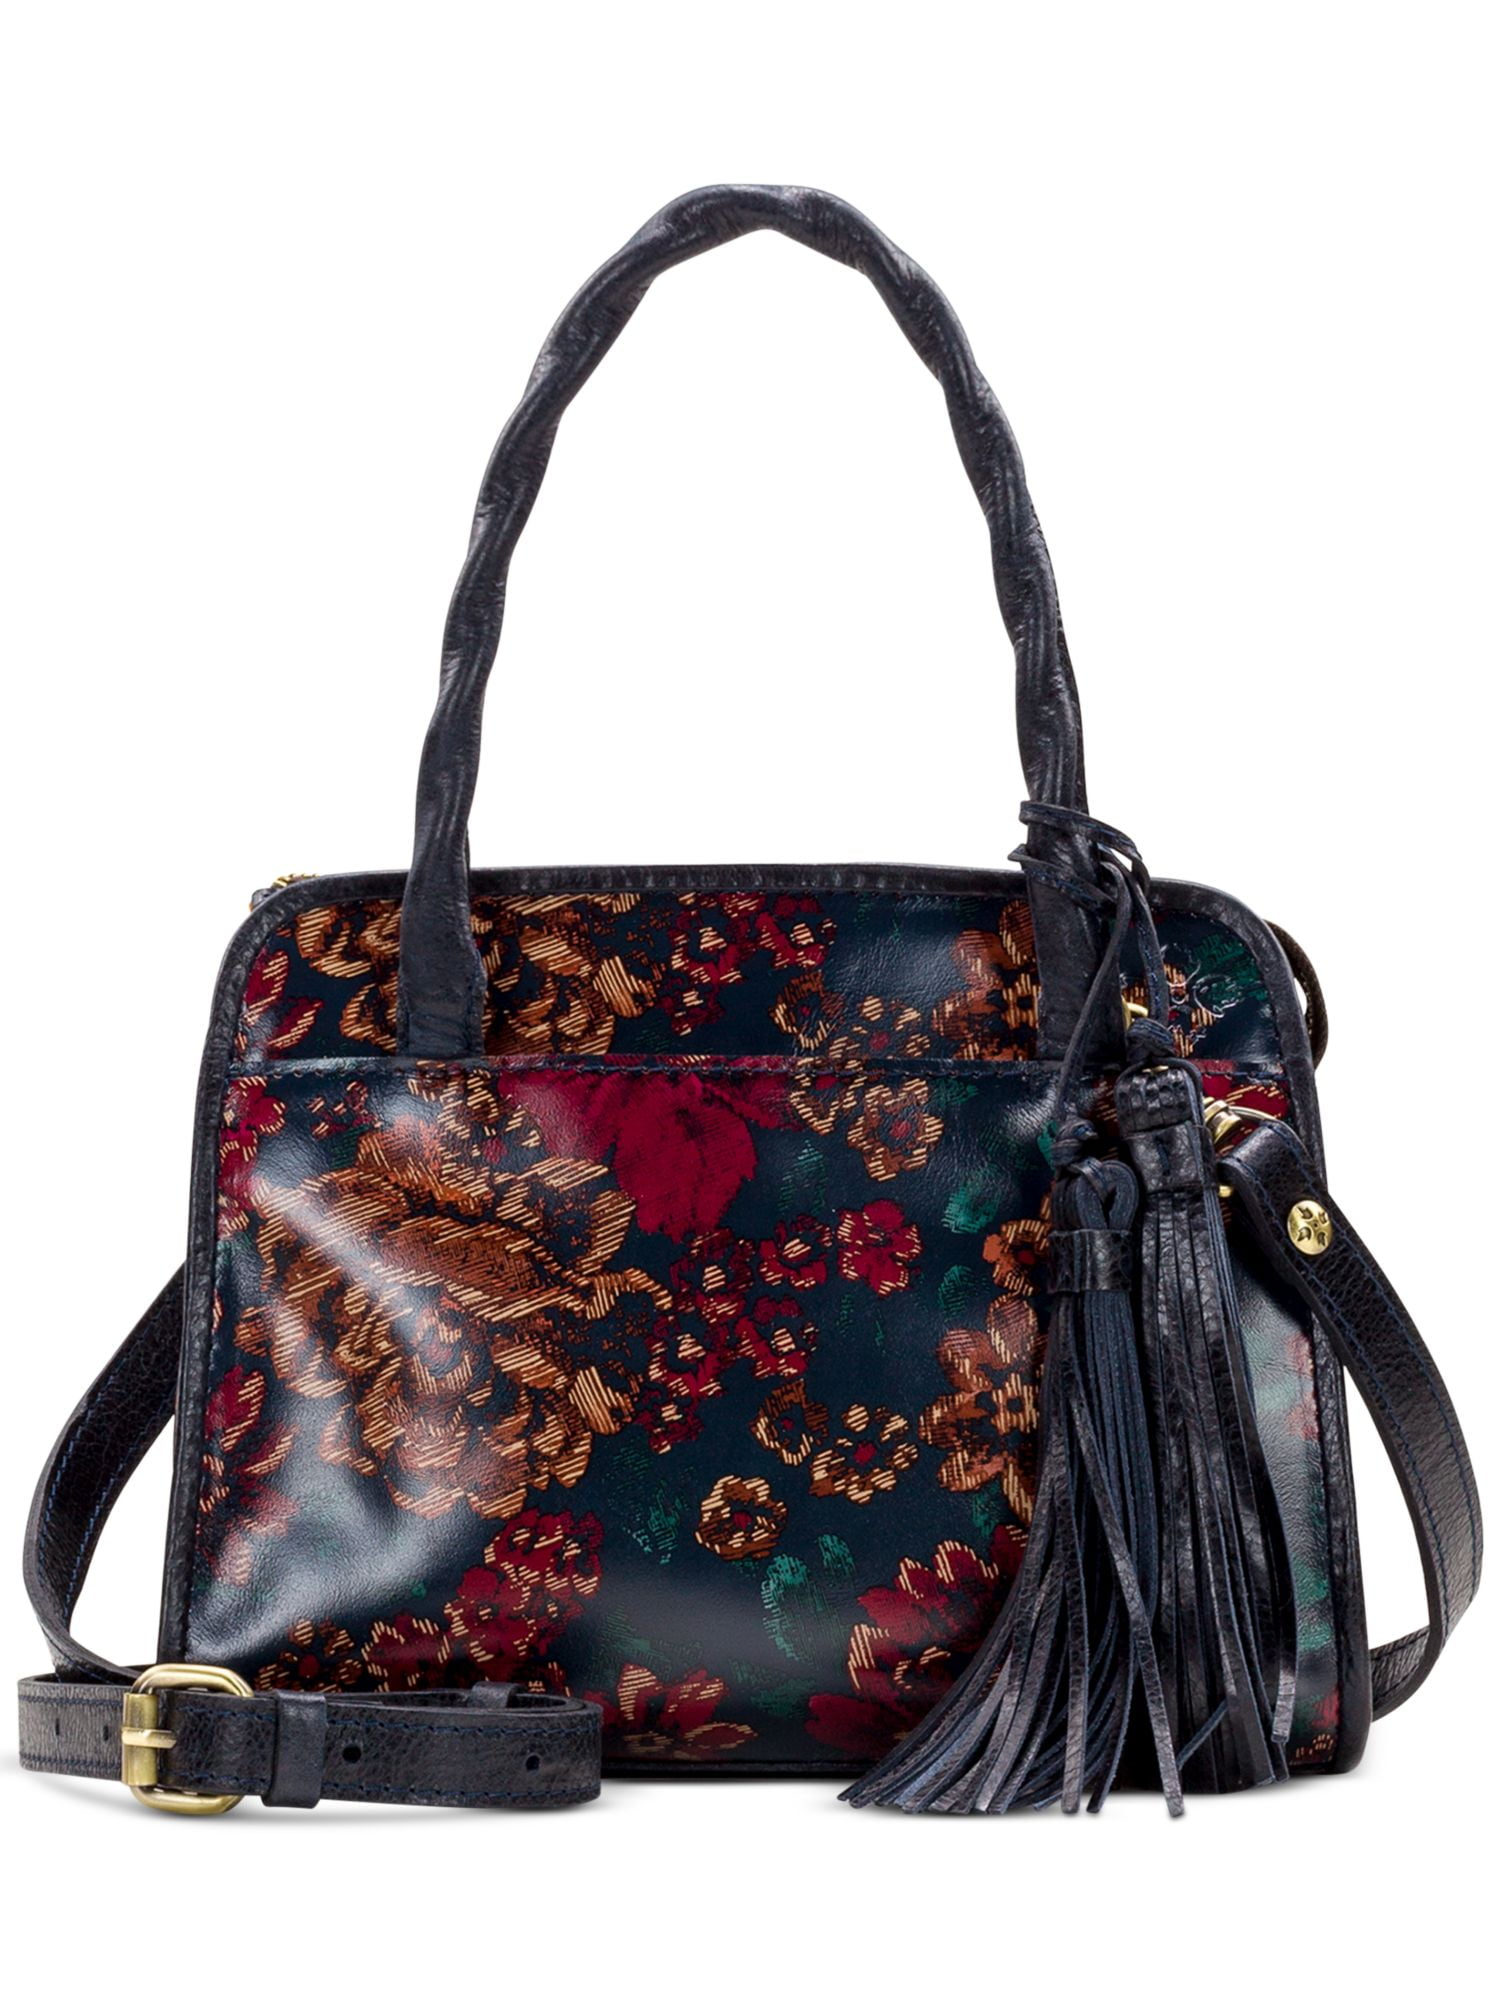 patricia nash leather purses